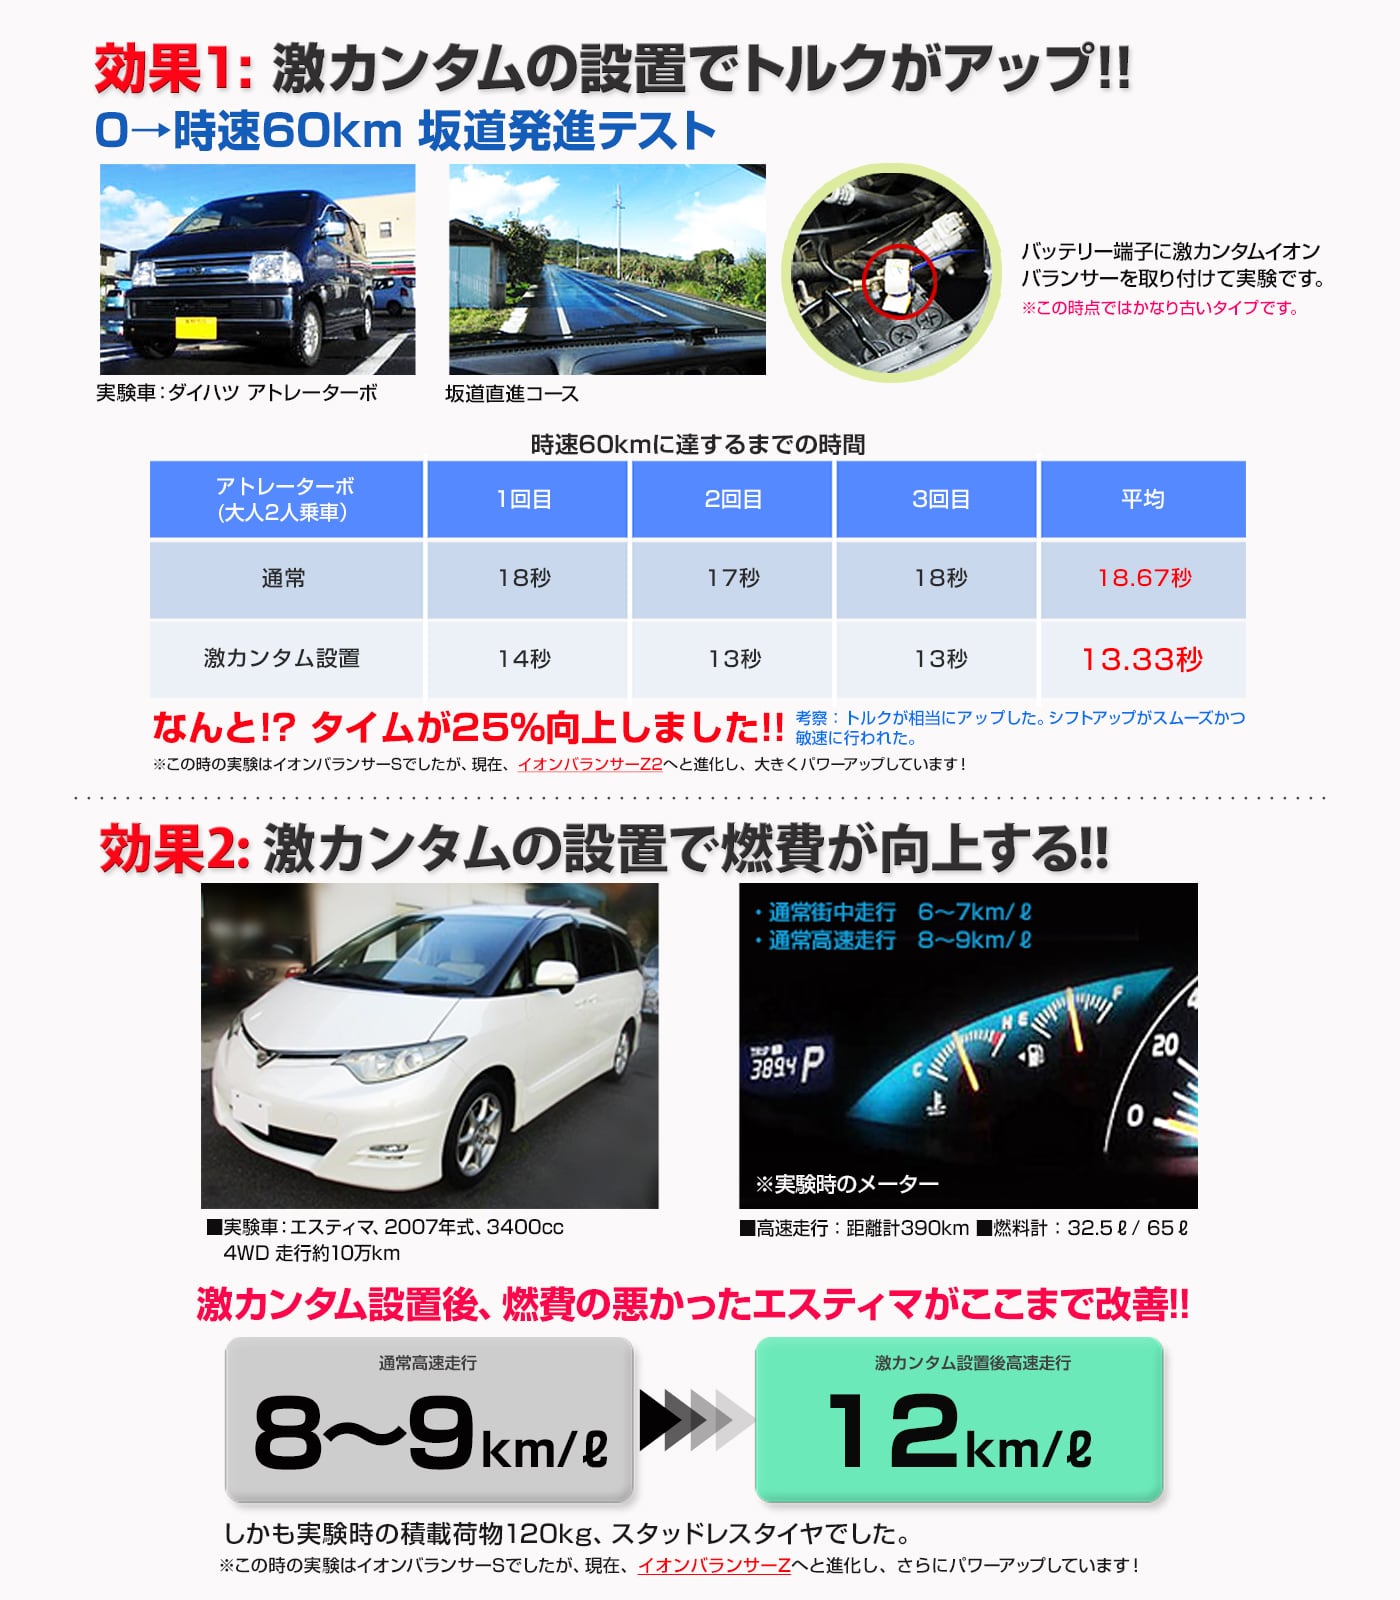 激カンタム・イオンバランサーＺ2 車 パワー トルク アップ！燃費 向上